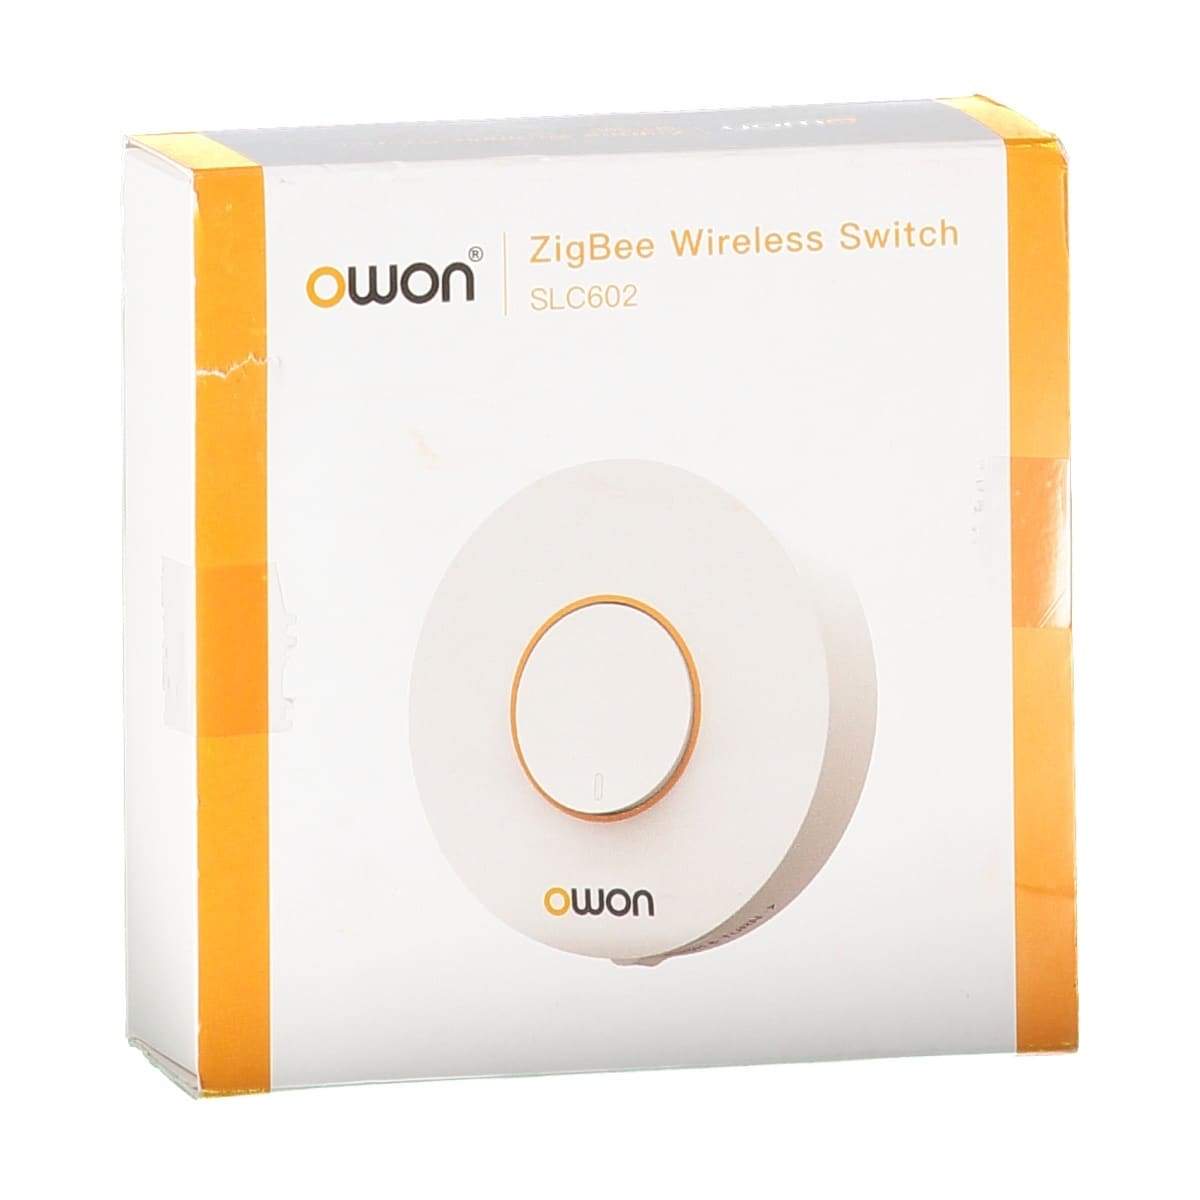 Owon ZigBee Wireless Switch